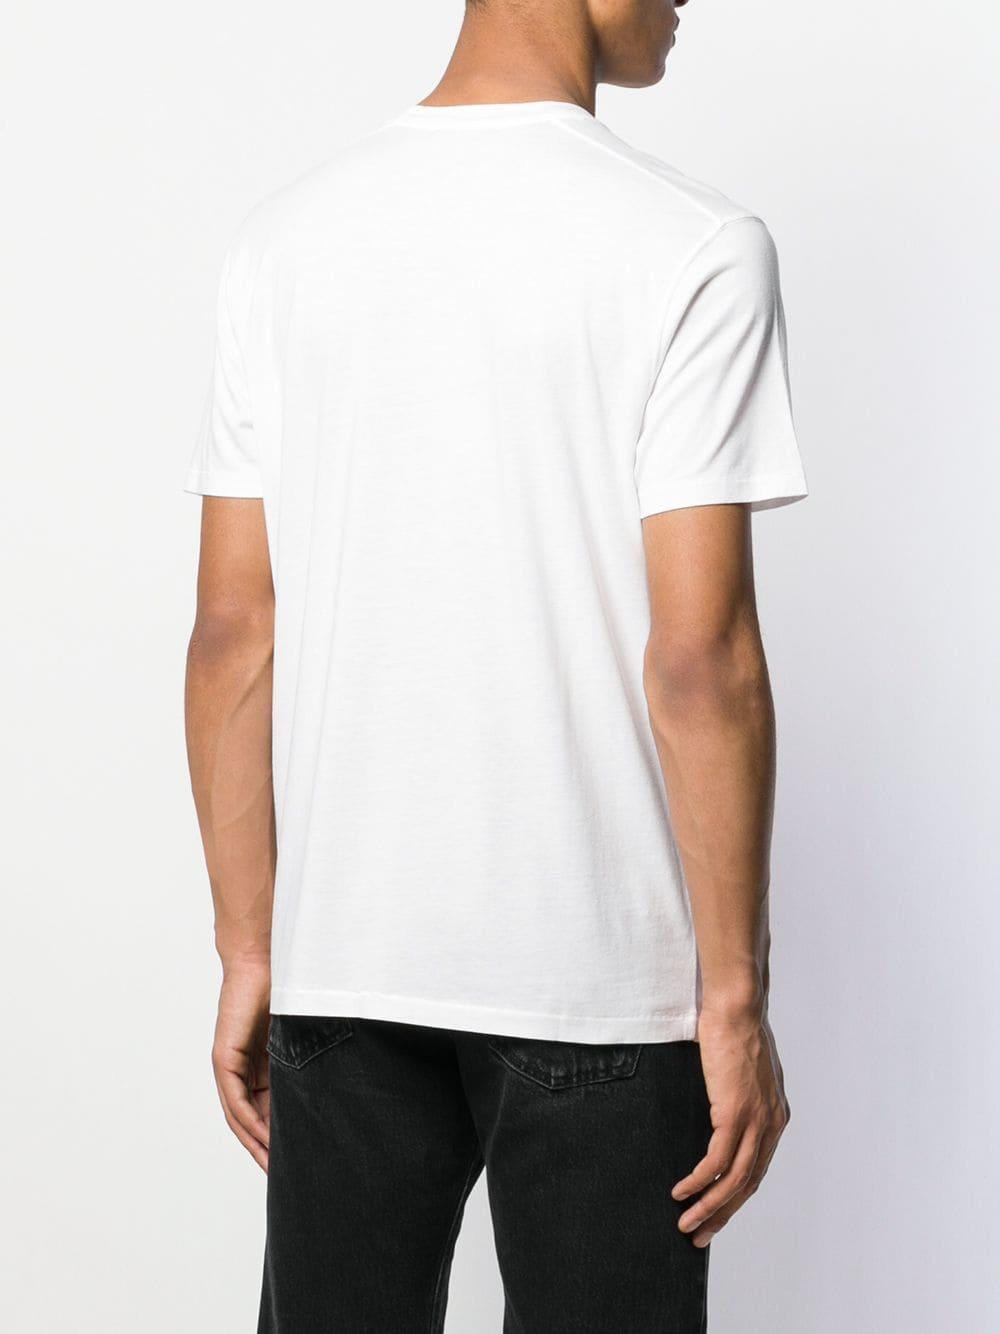 Tom Ford Plain T-shirt in White for Men - Lyst